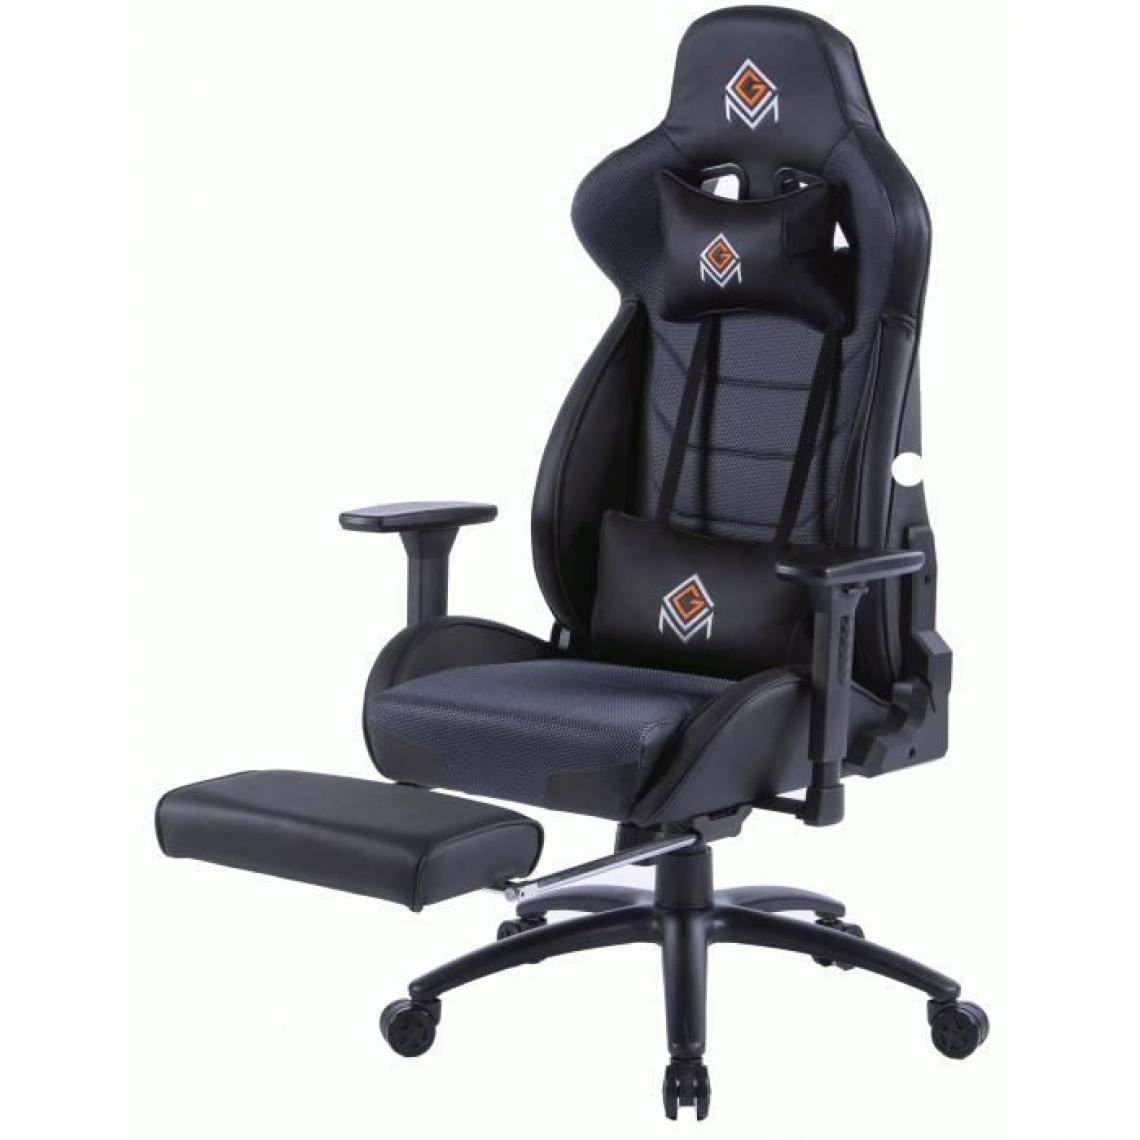 Cgm - CGM-Chaise gaming fonction bascule en polyester et PU, base en métal - avec appui-tete, repose-pieds et oreiller lombaires - - Chaise gamer